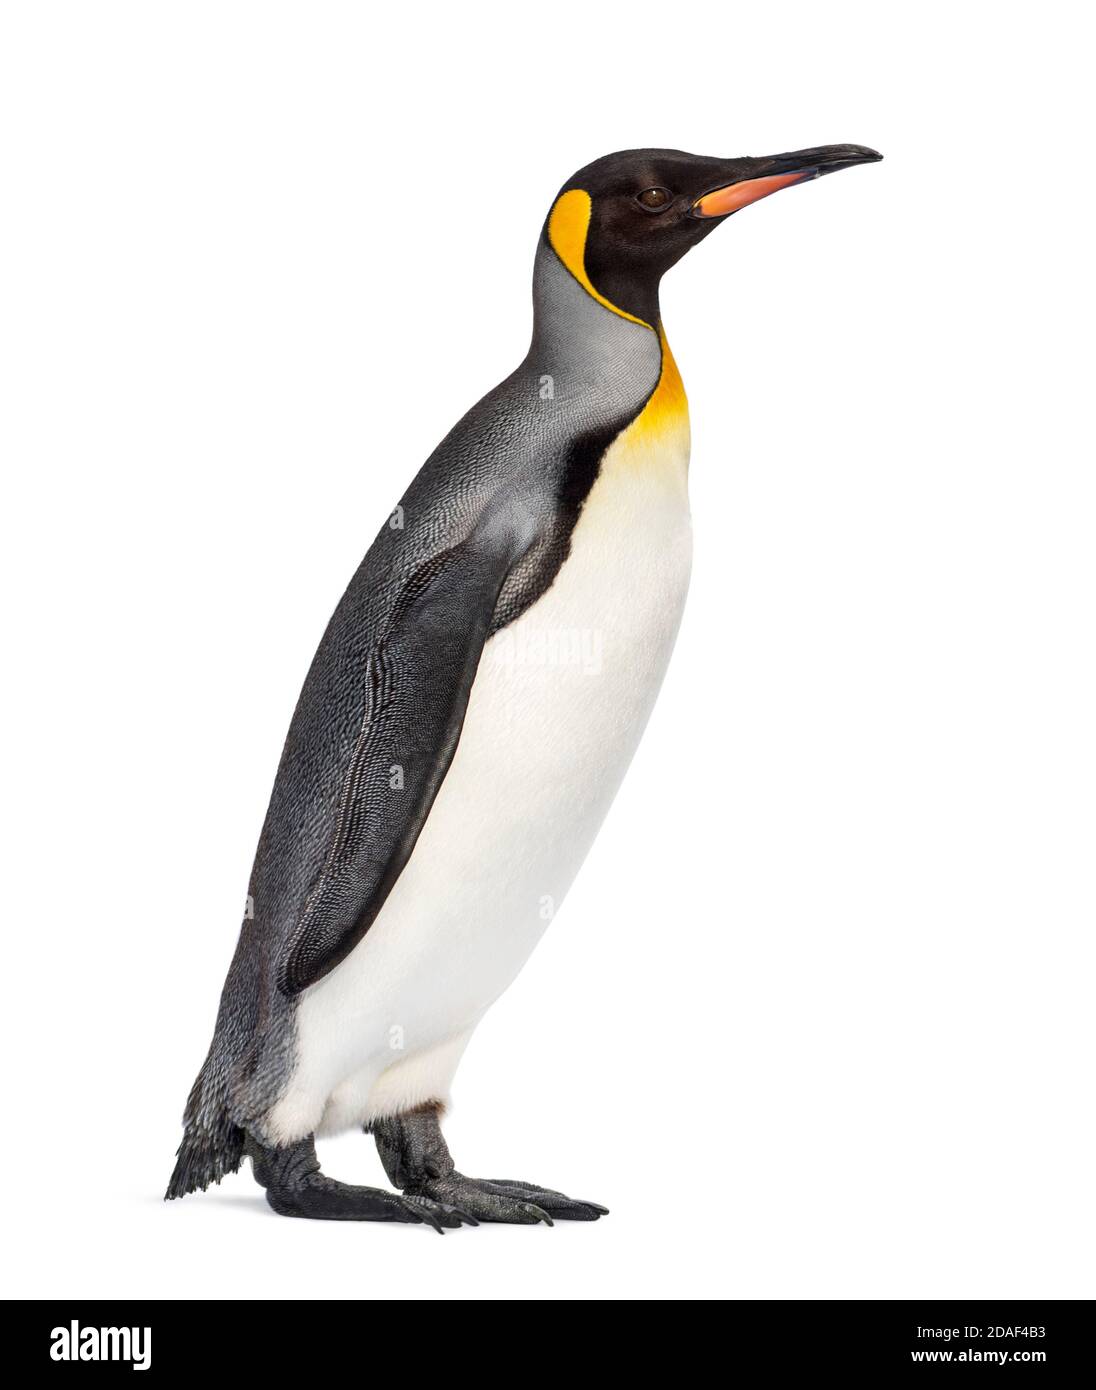 Grand pingouin debout devant un fond blanc Banque D'Images